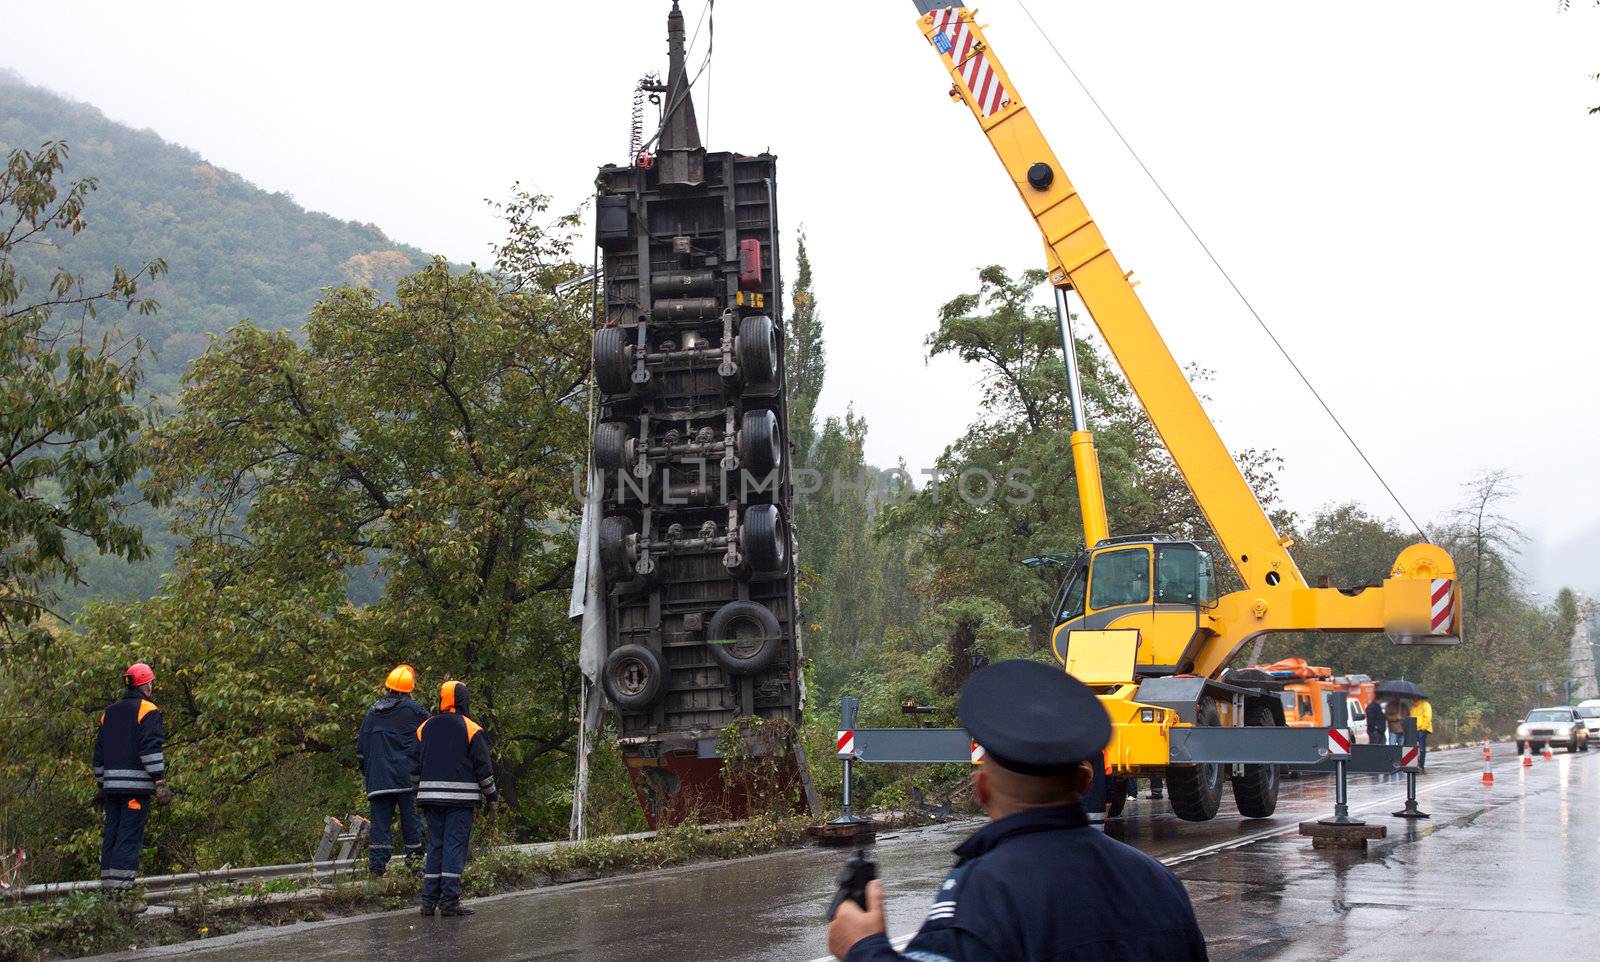 Crane lifting a truck after crash accident